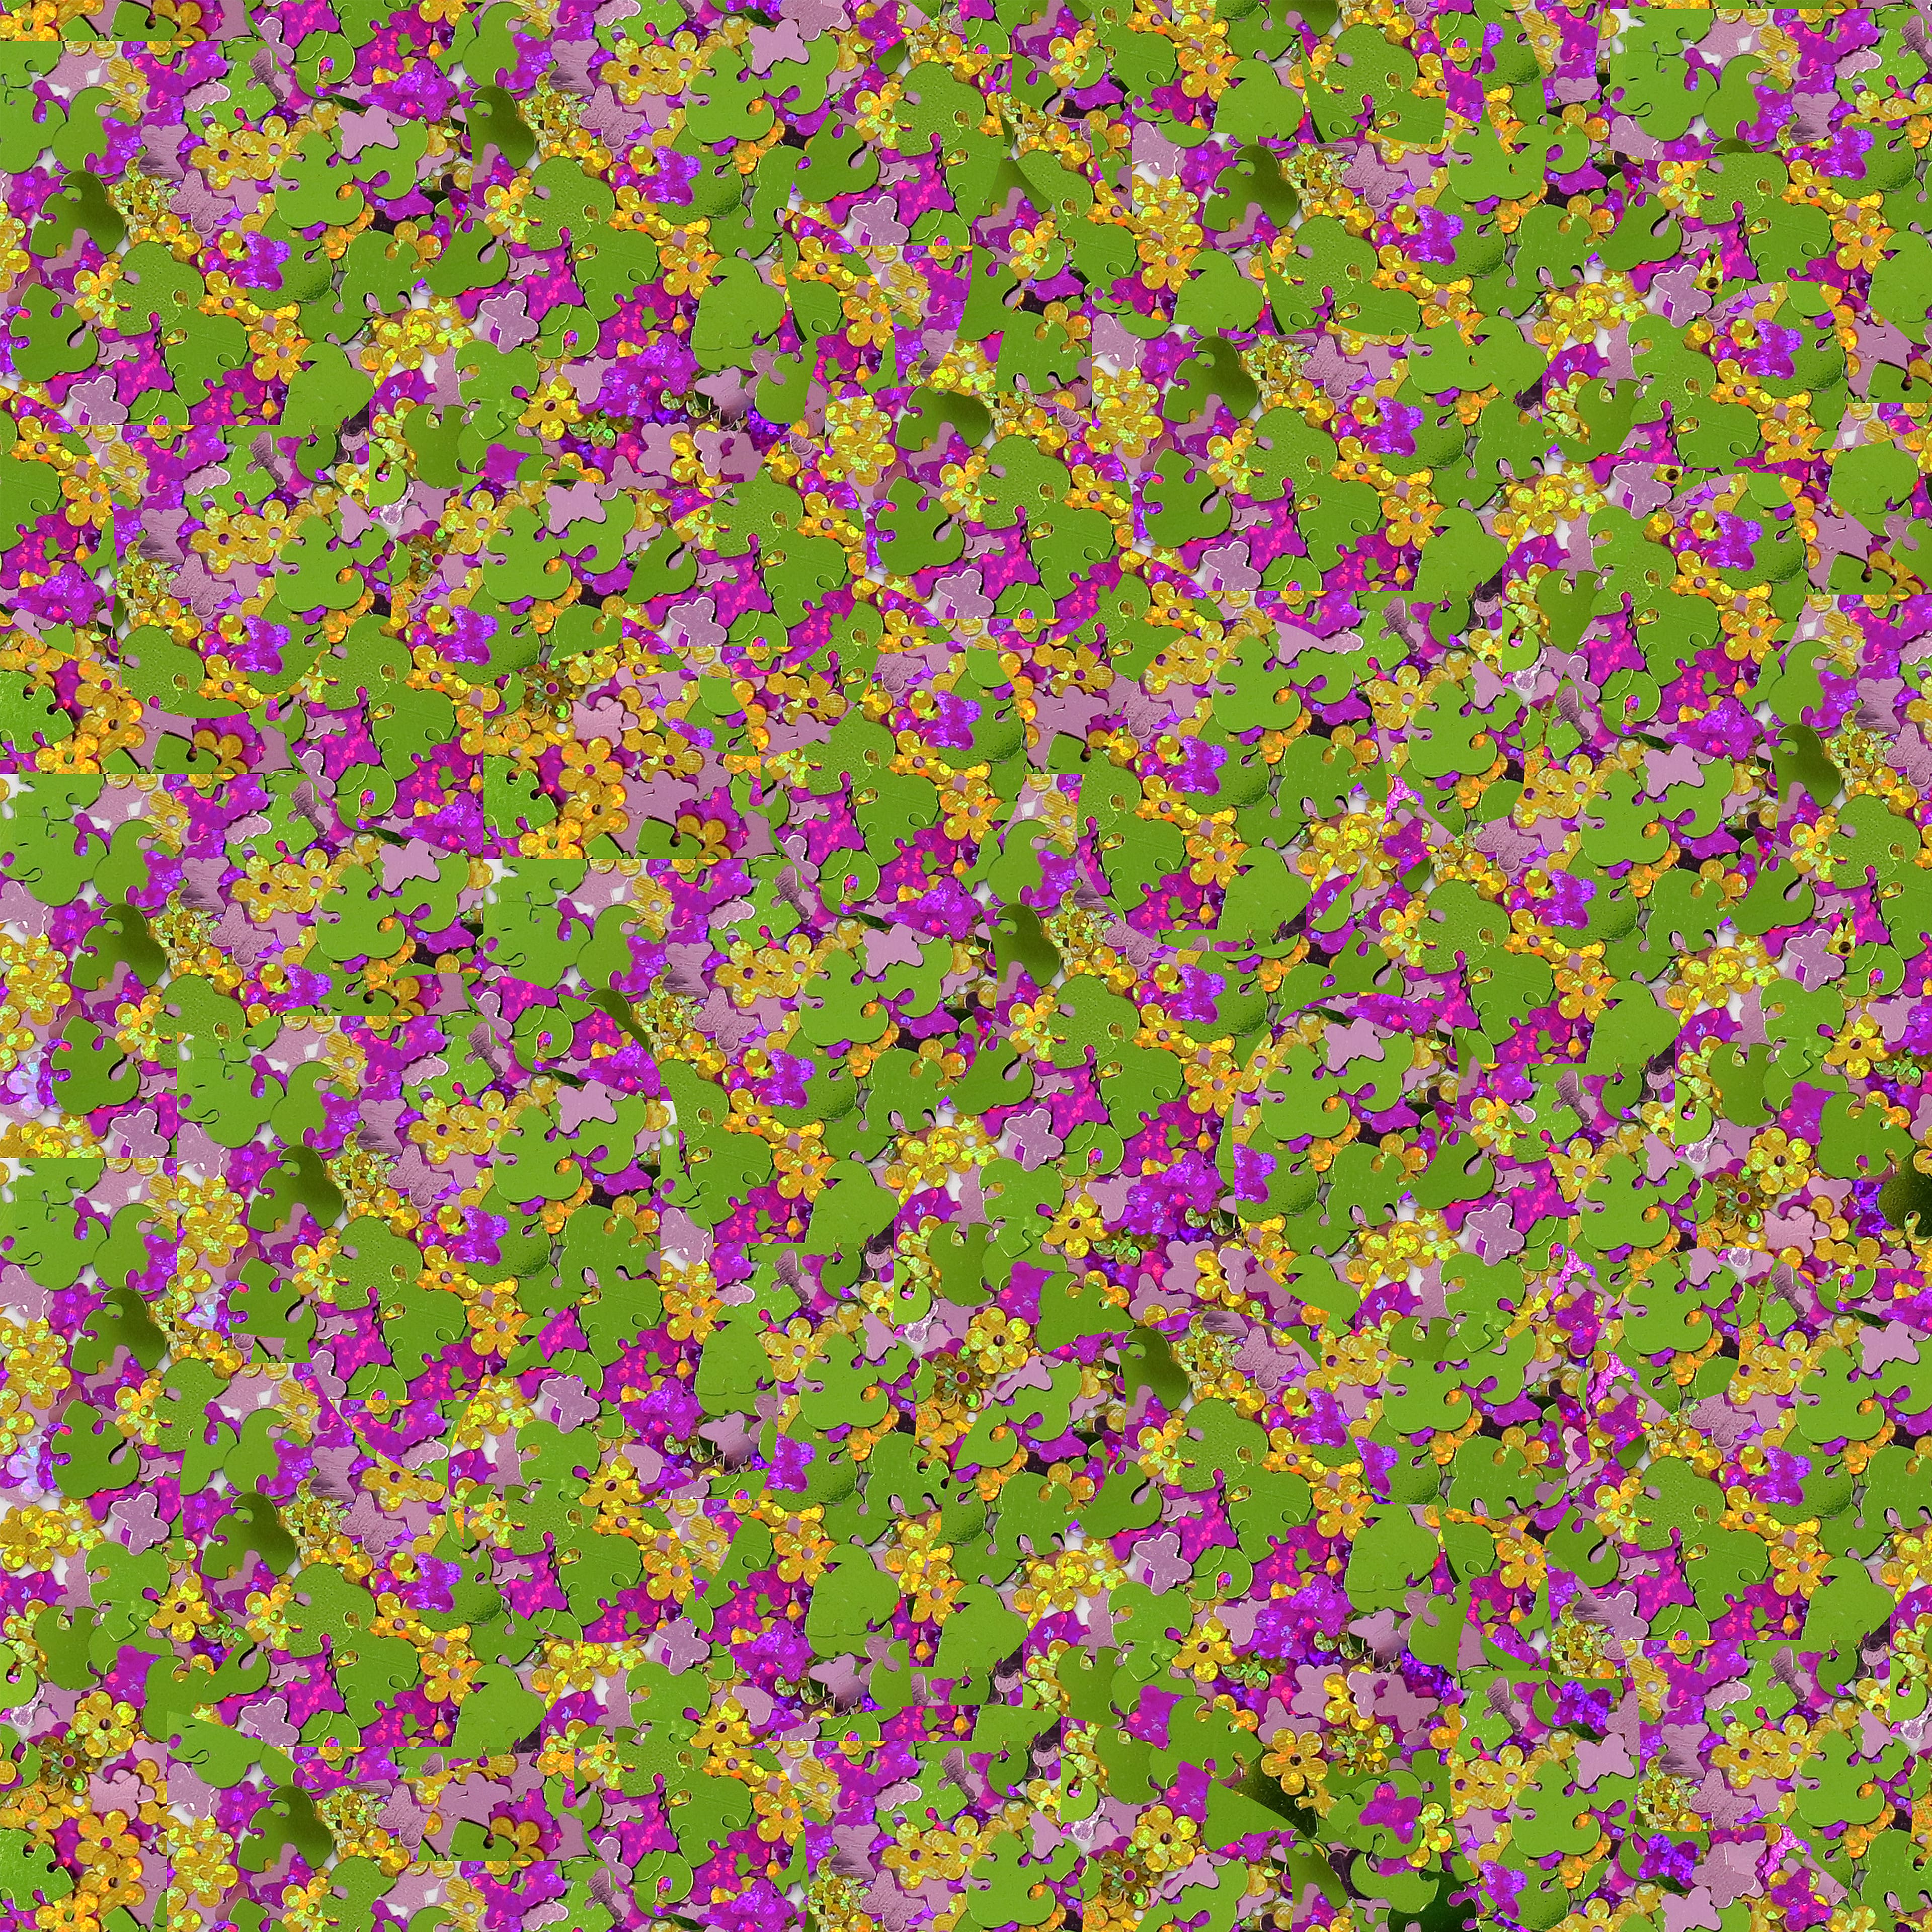 Butterfly Meadow Shaped Glitter Swirl Jar by Creatology&#x2122;